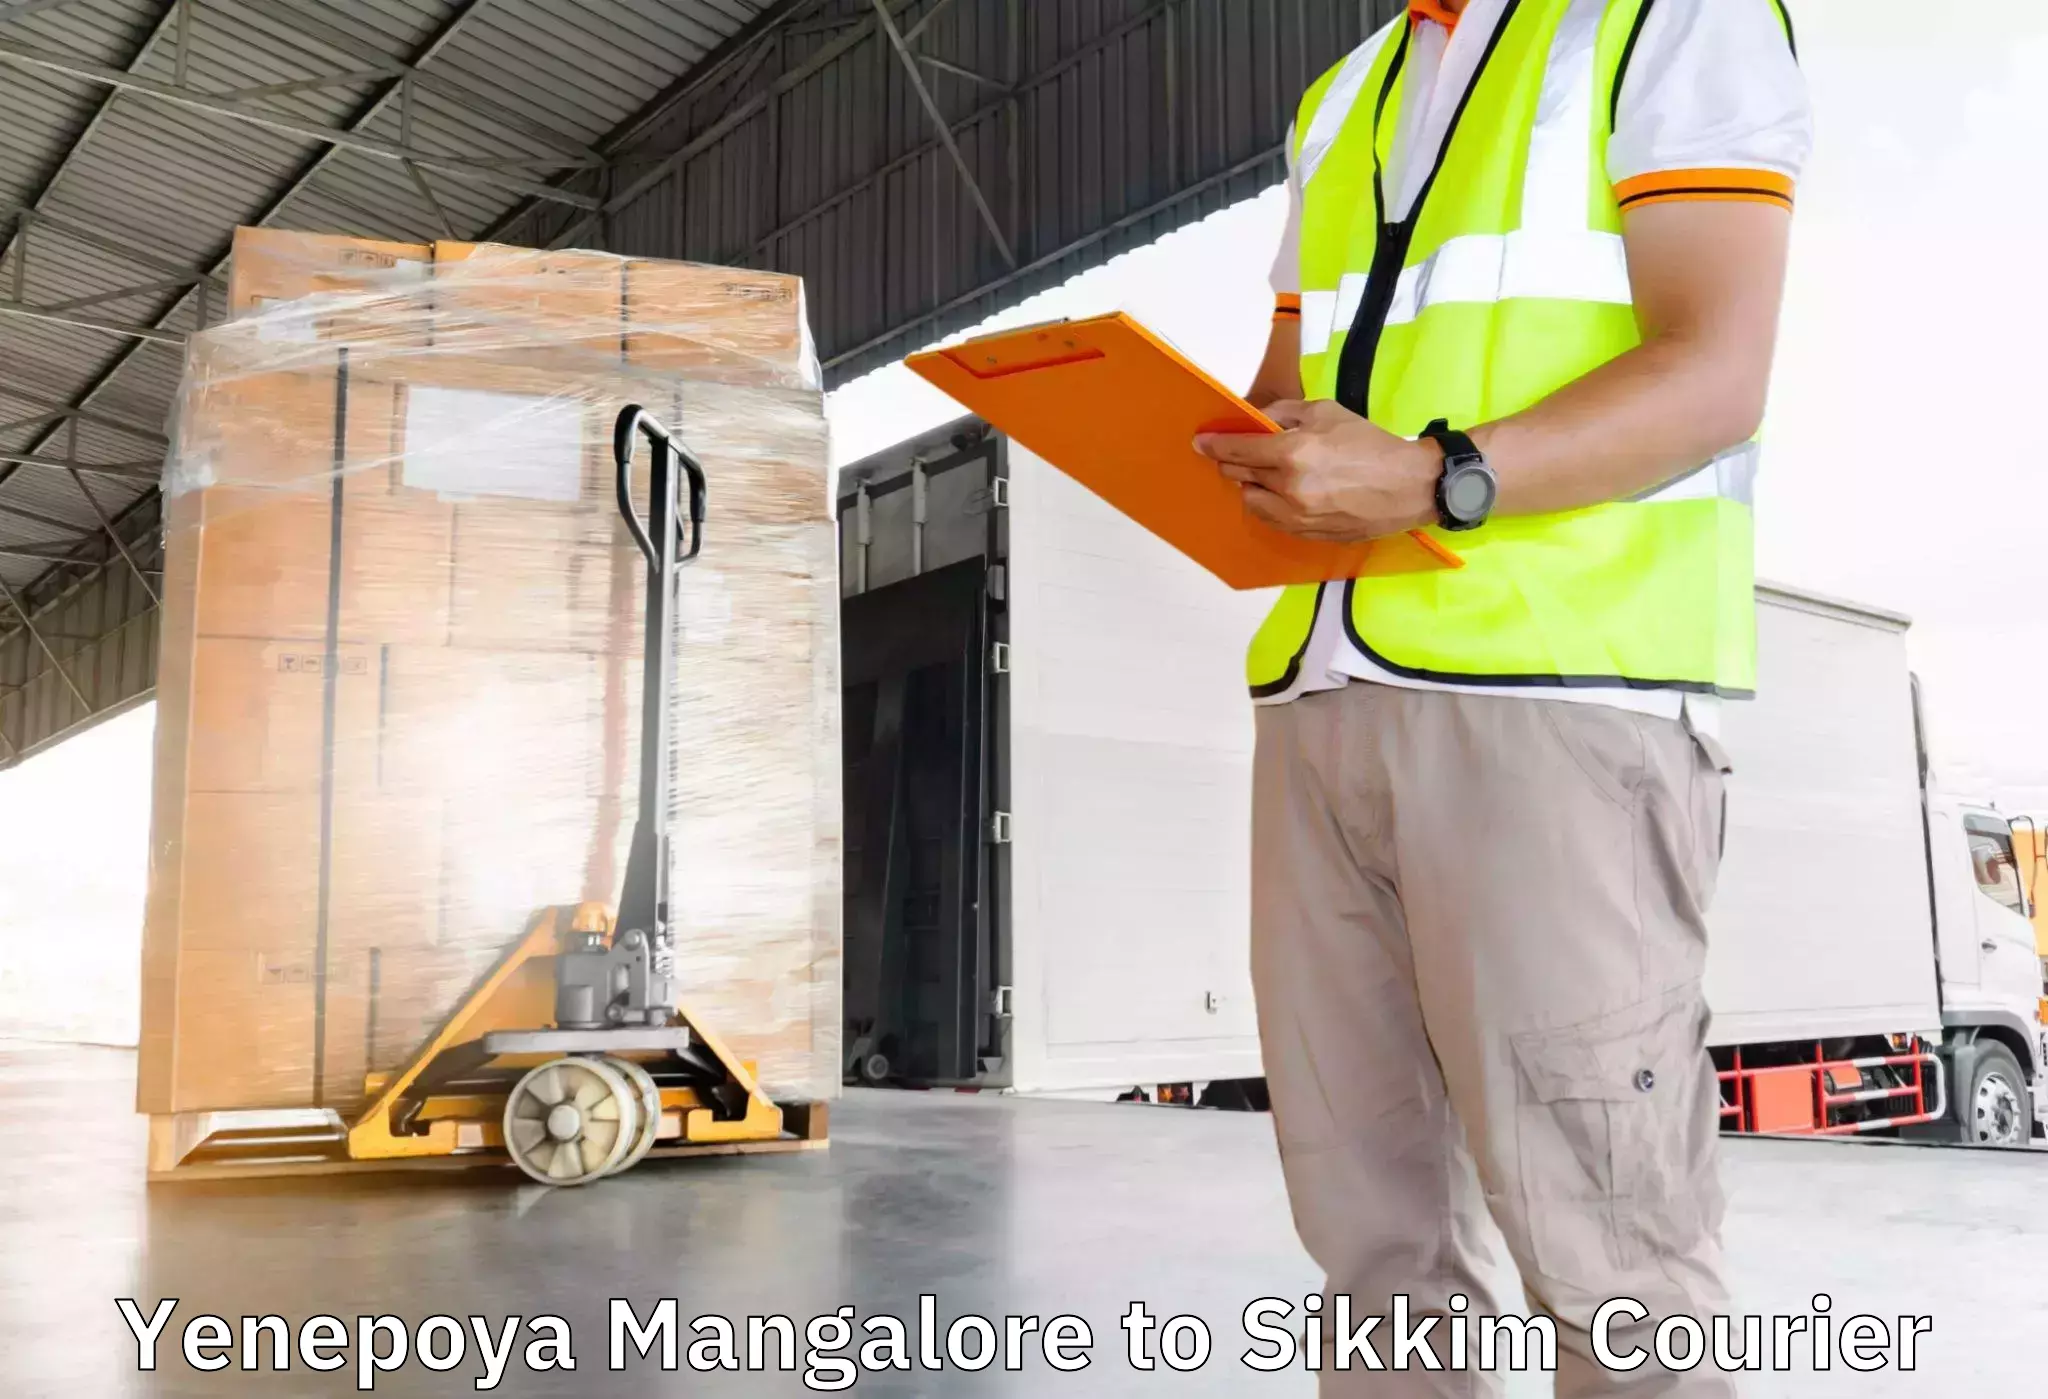 Specialized moving company Yenepoya Mangalore to Ranipool